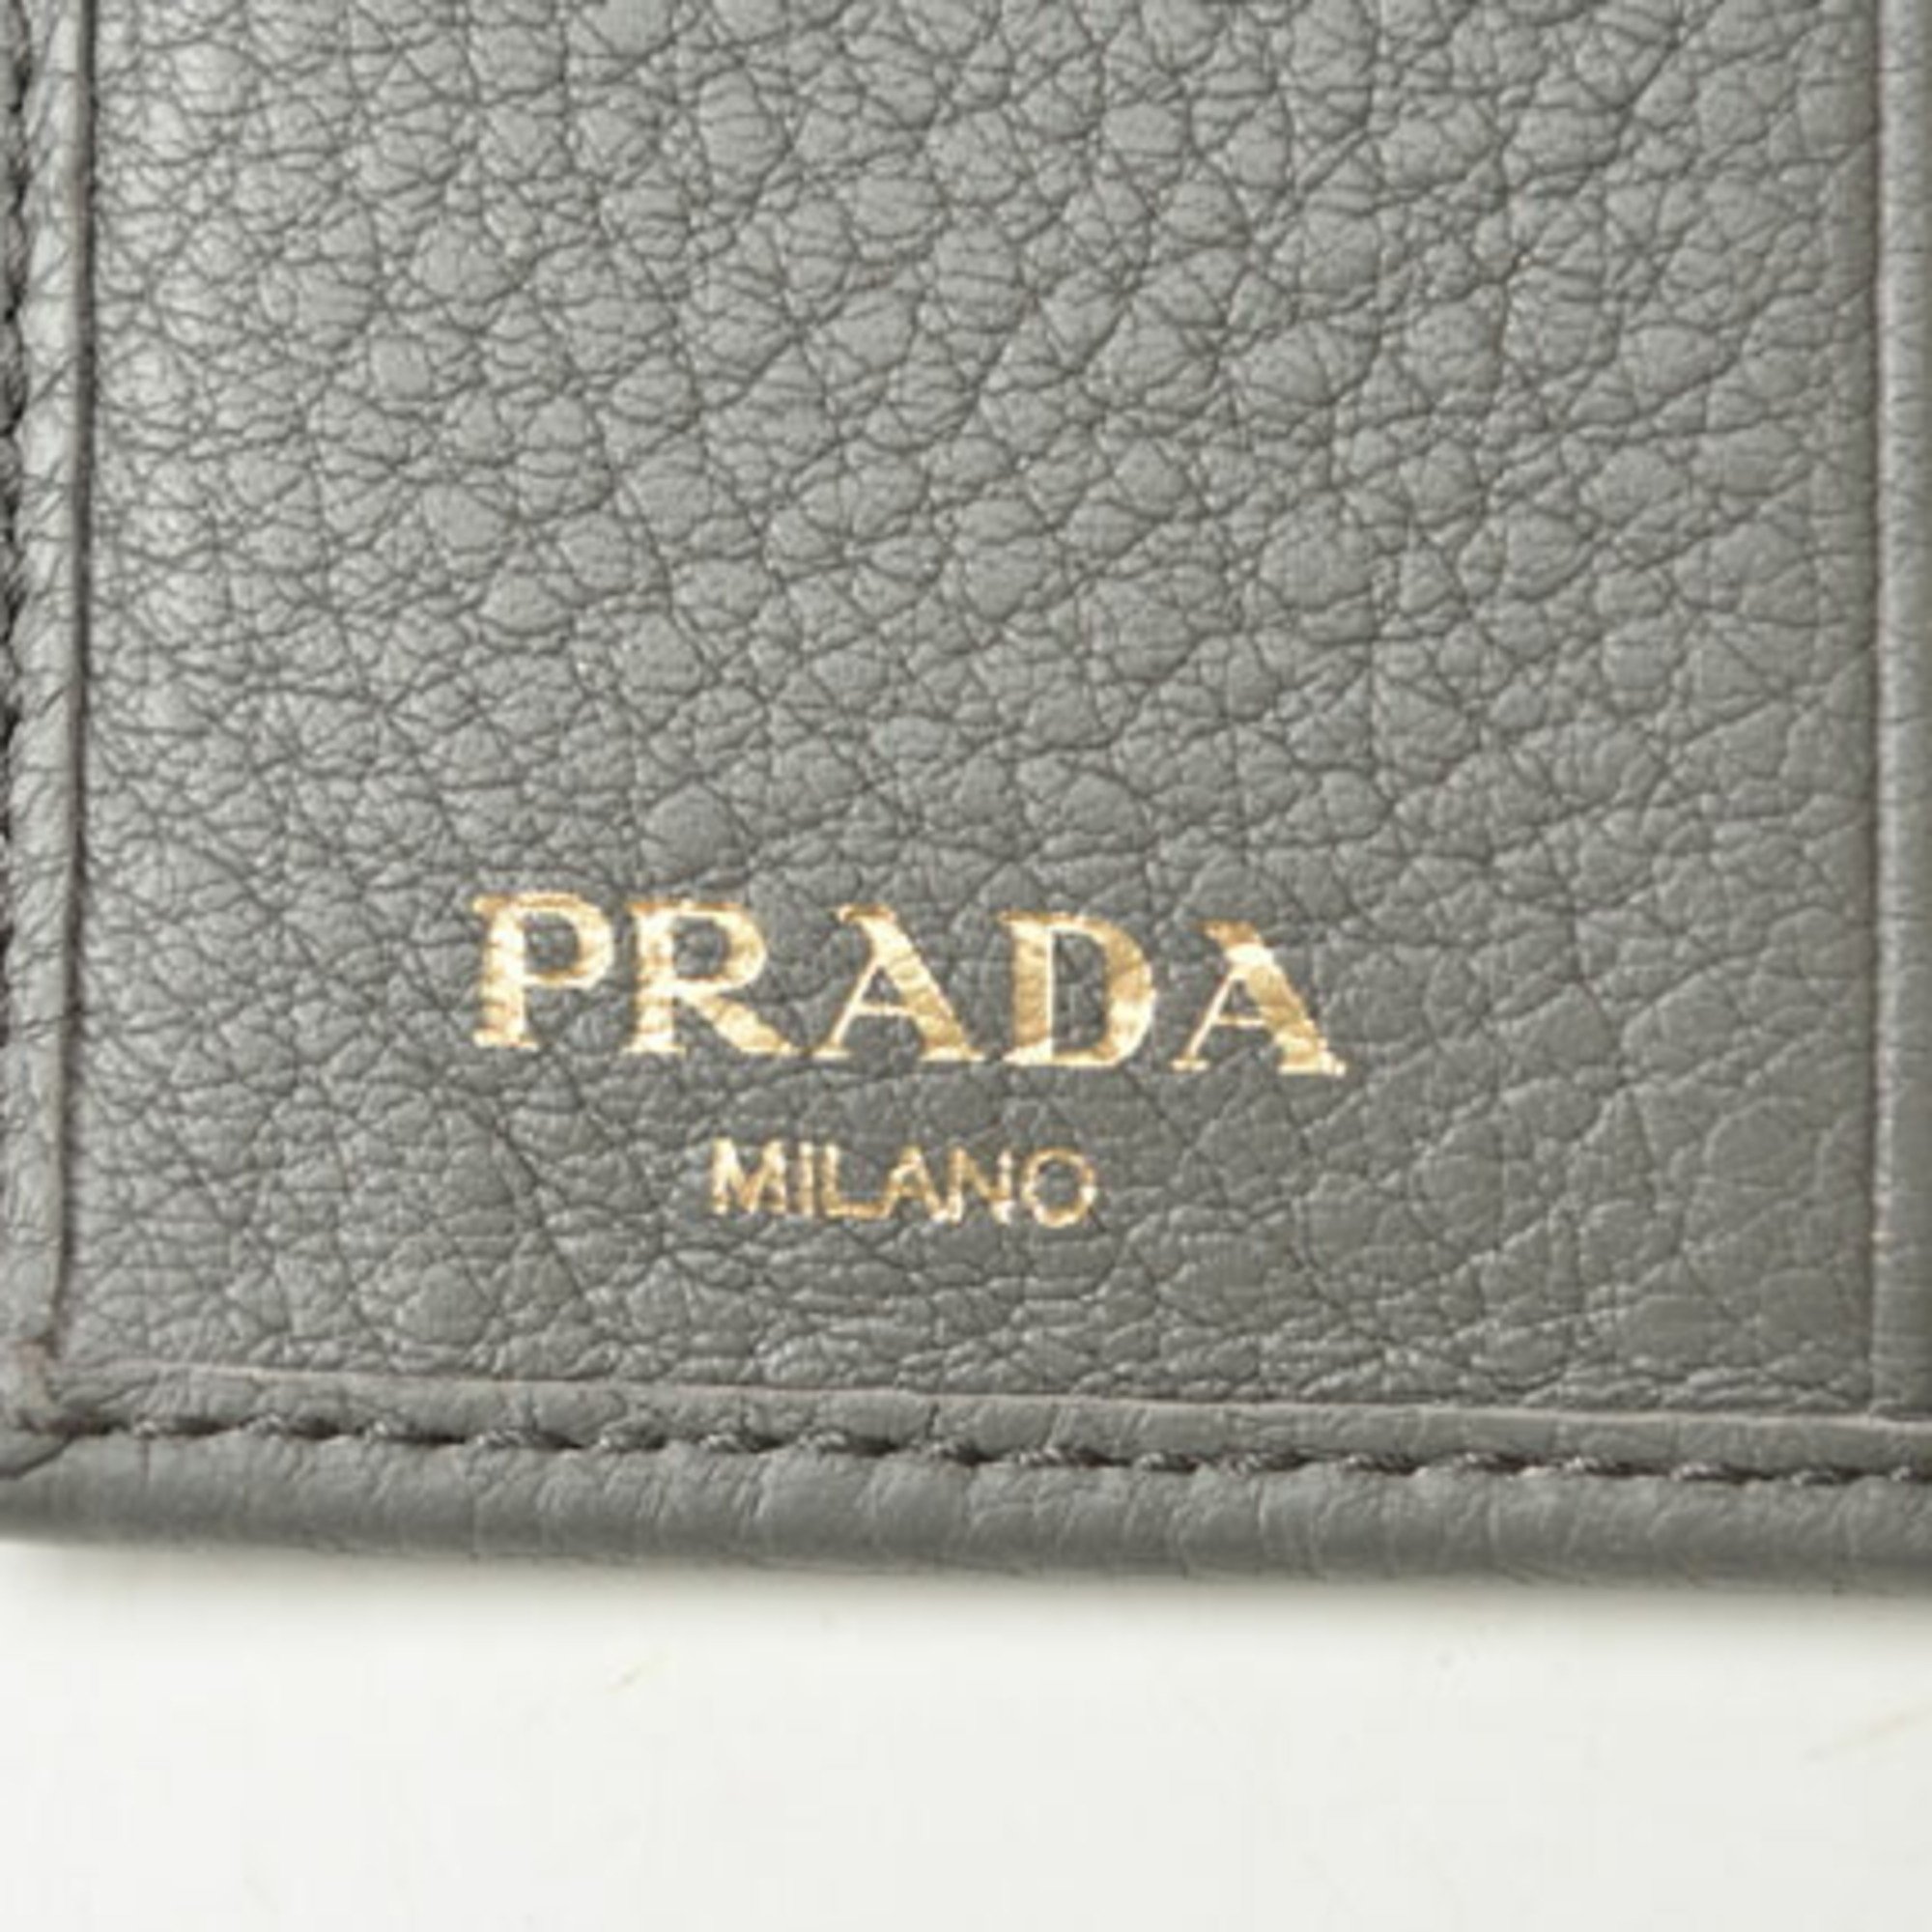 PRADA Folding Wallet 1MV204 VITELLO GRAIN Leather MARMO Grey